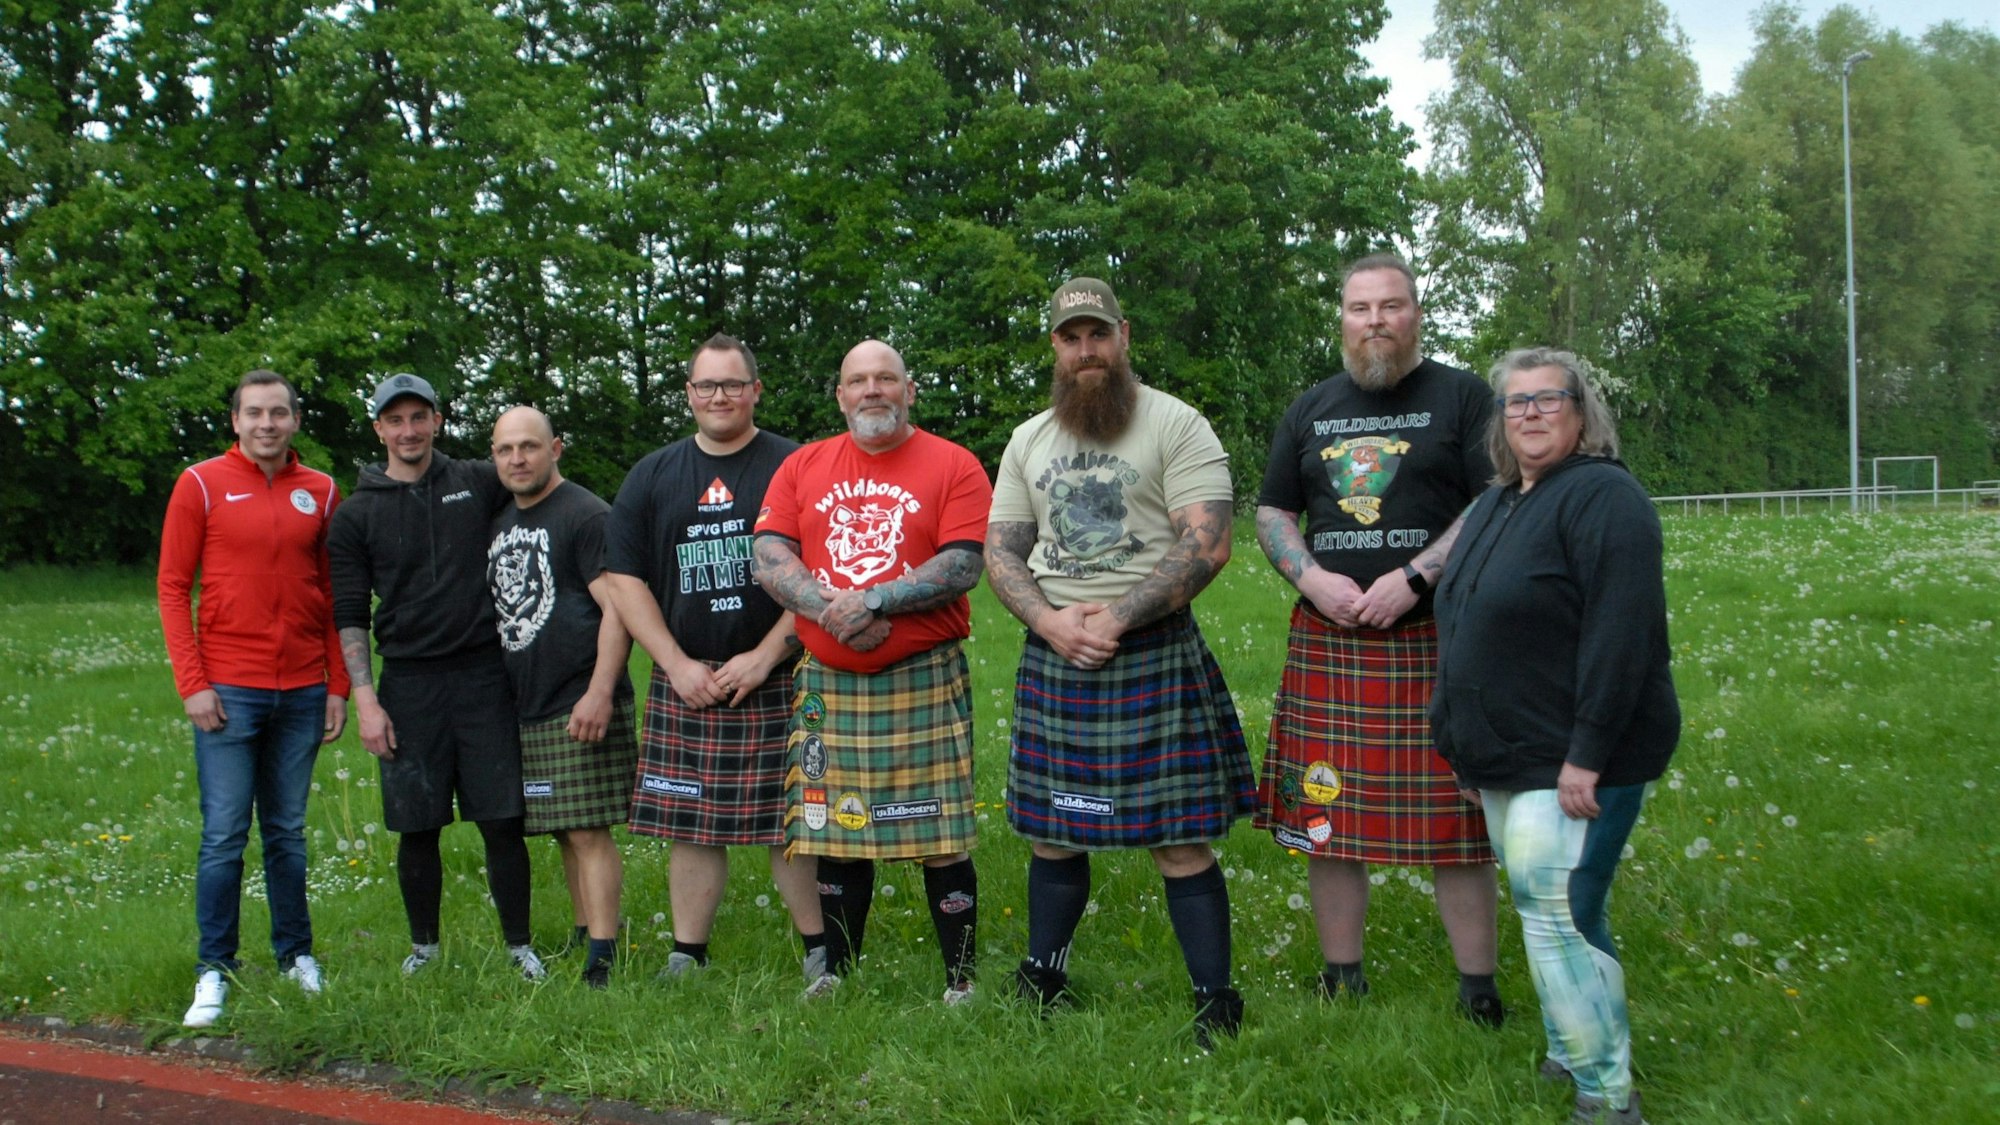 Training der Highlander der Spvg BBT: Sieben Männer und eine Frau schauen in Richtung der Kamera.